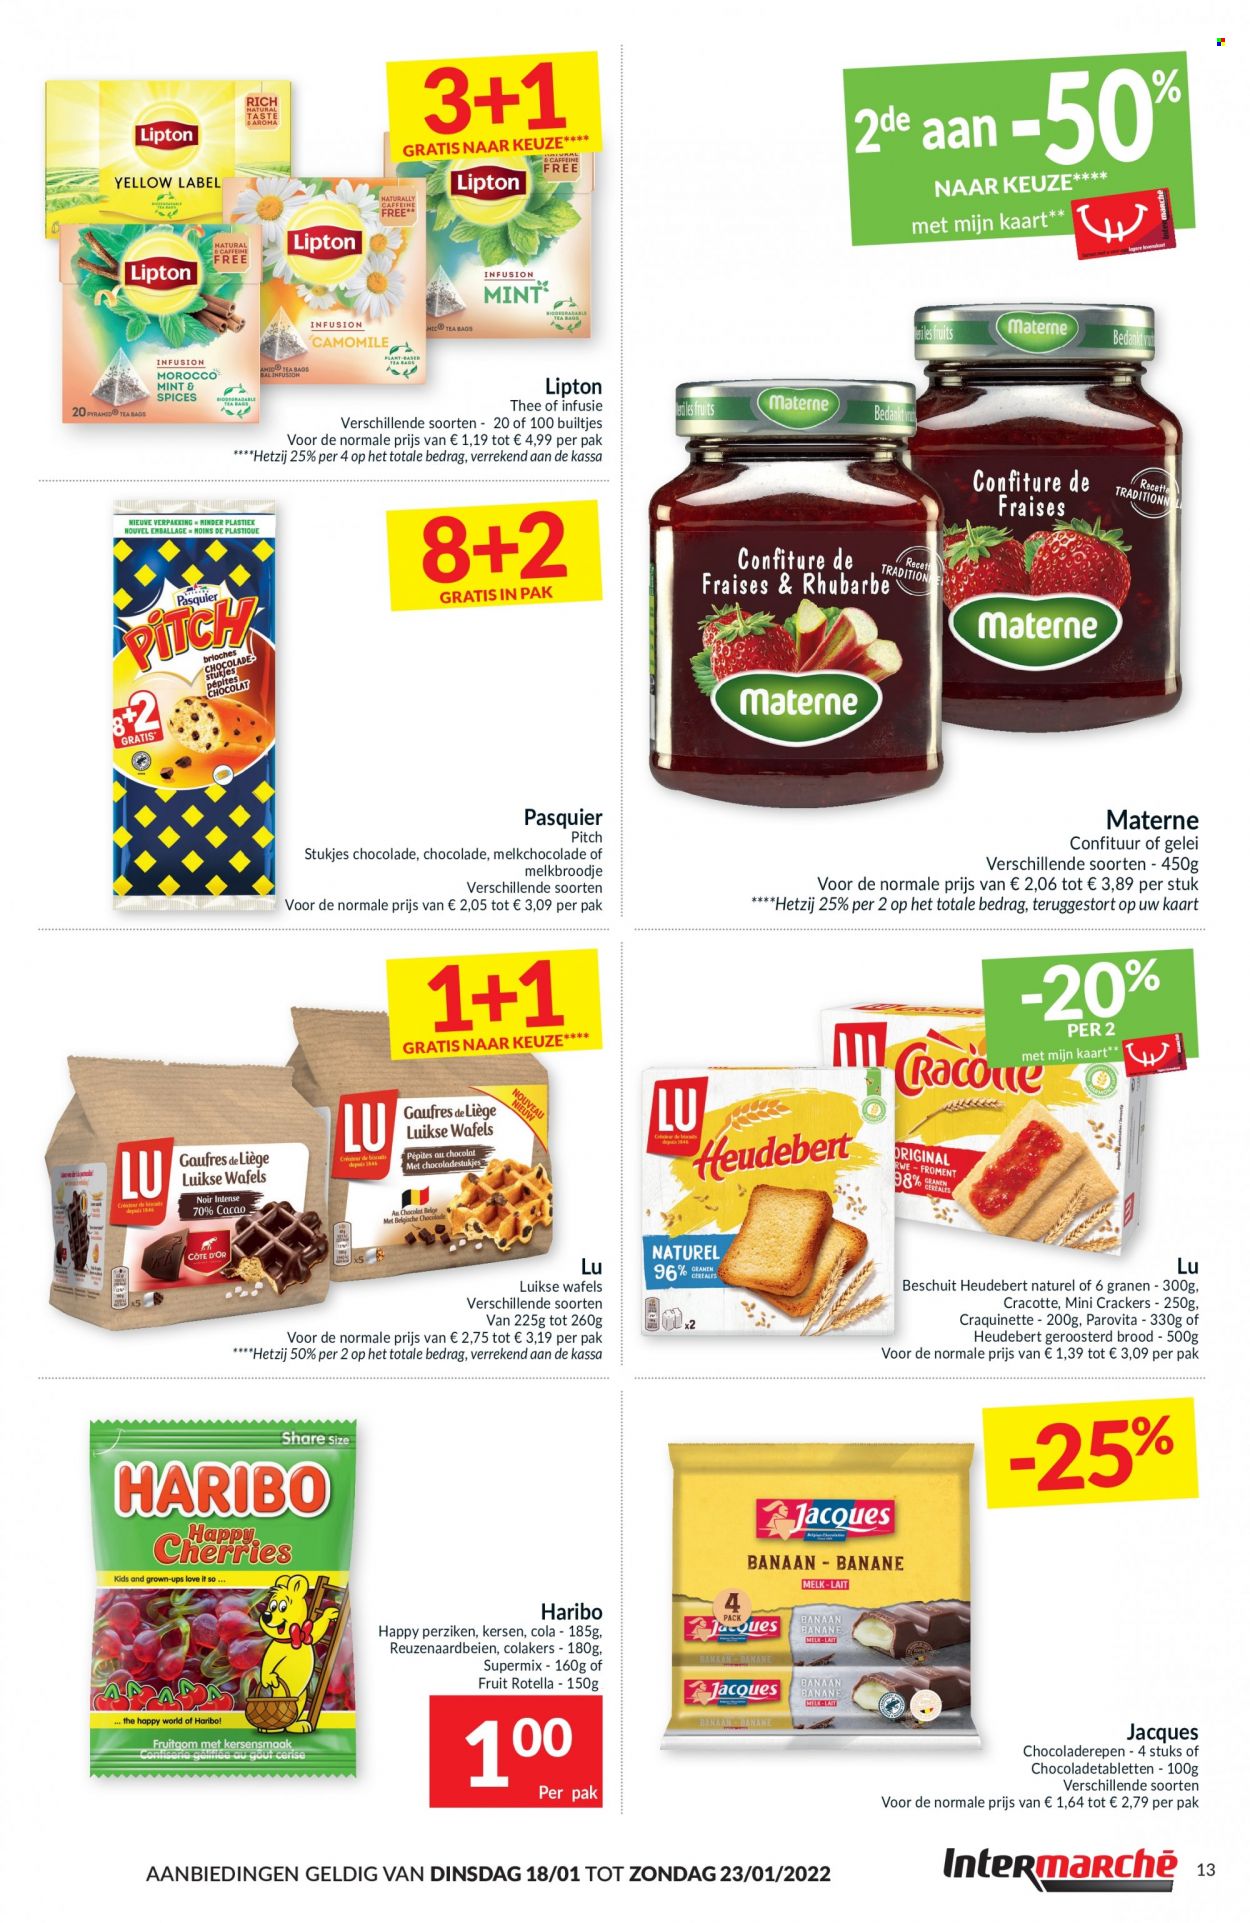 thumbnail - Intermarché-aanbieding - 18/01/2022 - 23/01/2022 -  producten in de aanbieding - brood, kersen, chocolade, melkchocolade, crackers, Lipton. Pagina 13.